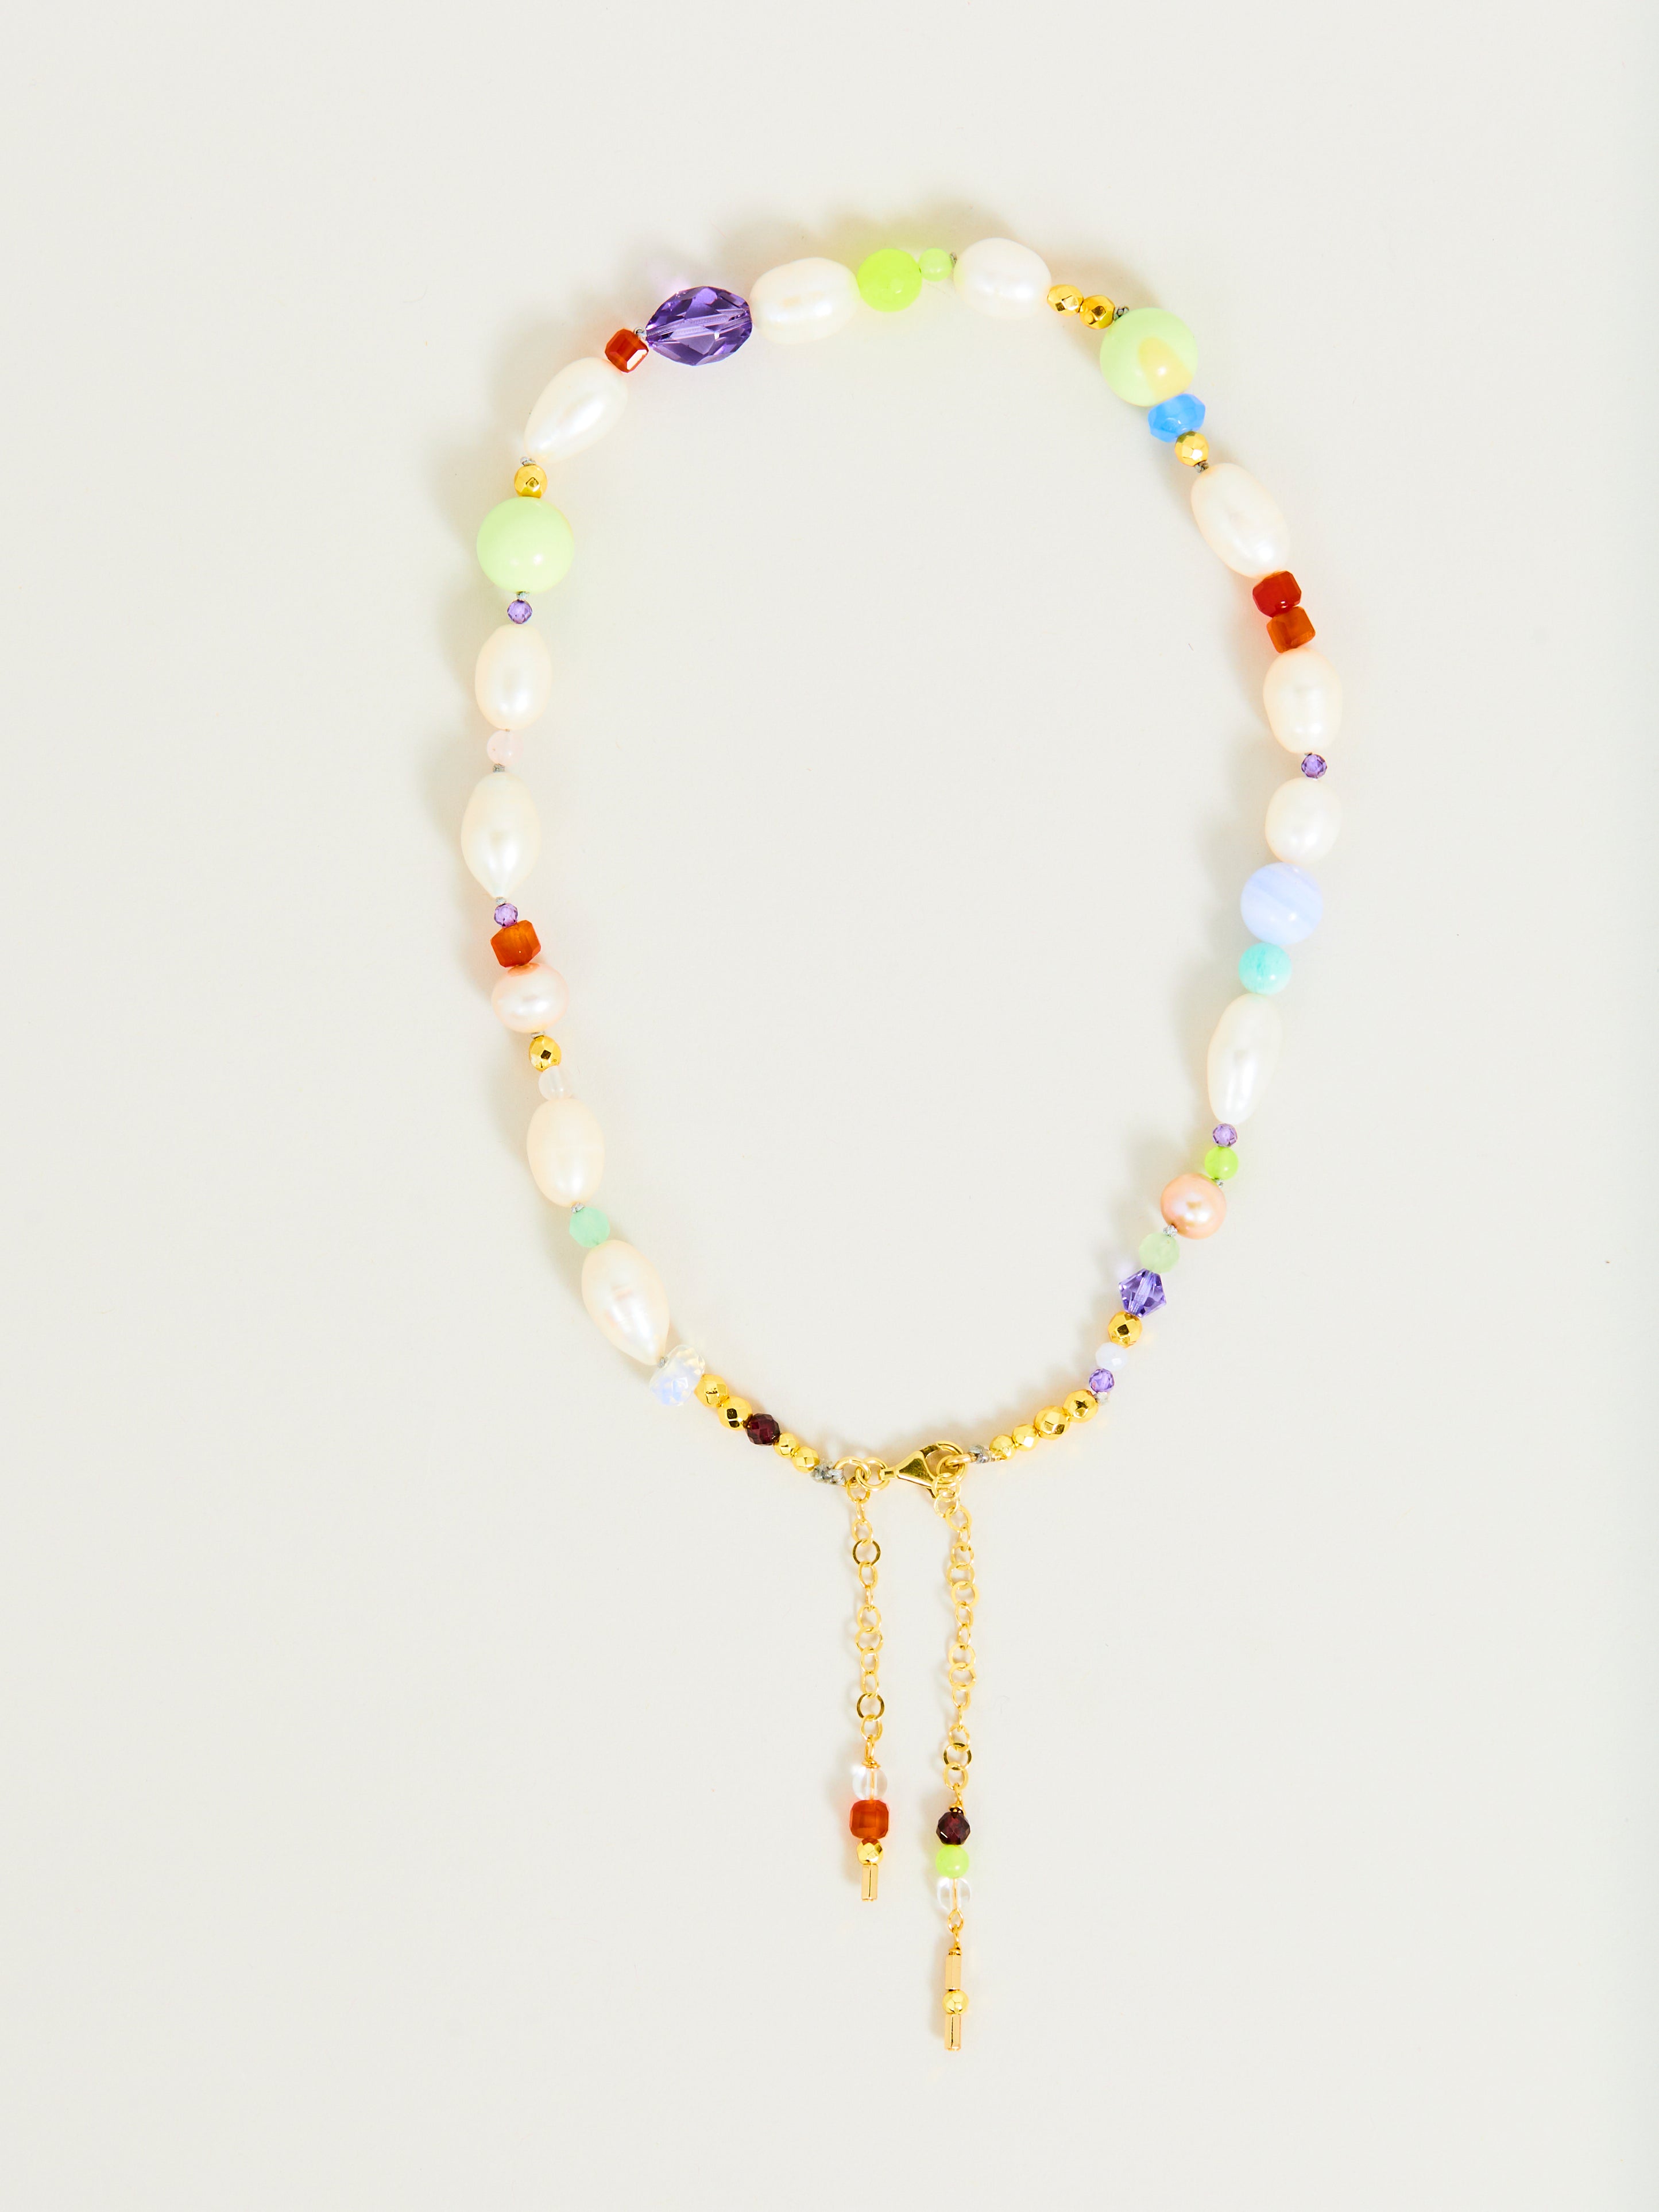 Produktbild einer Perlenkette mit Süßwasserperlen und Edelsteinen in gold